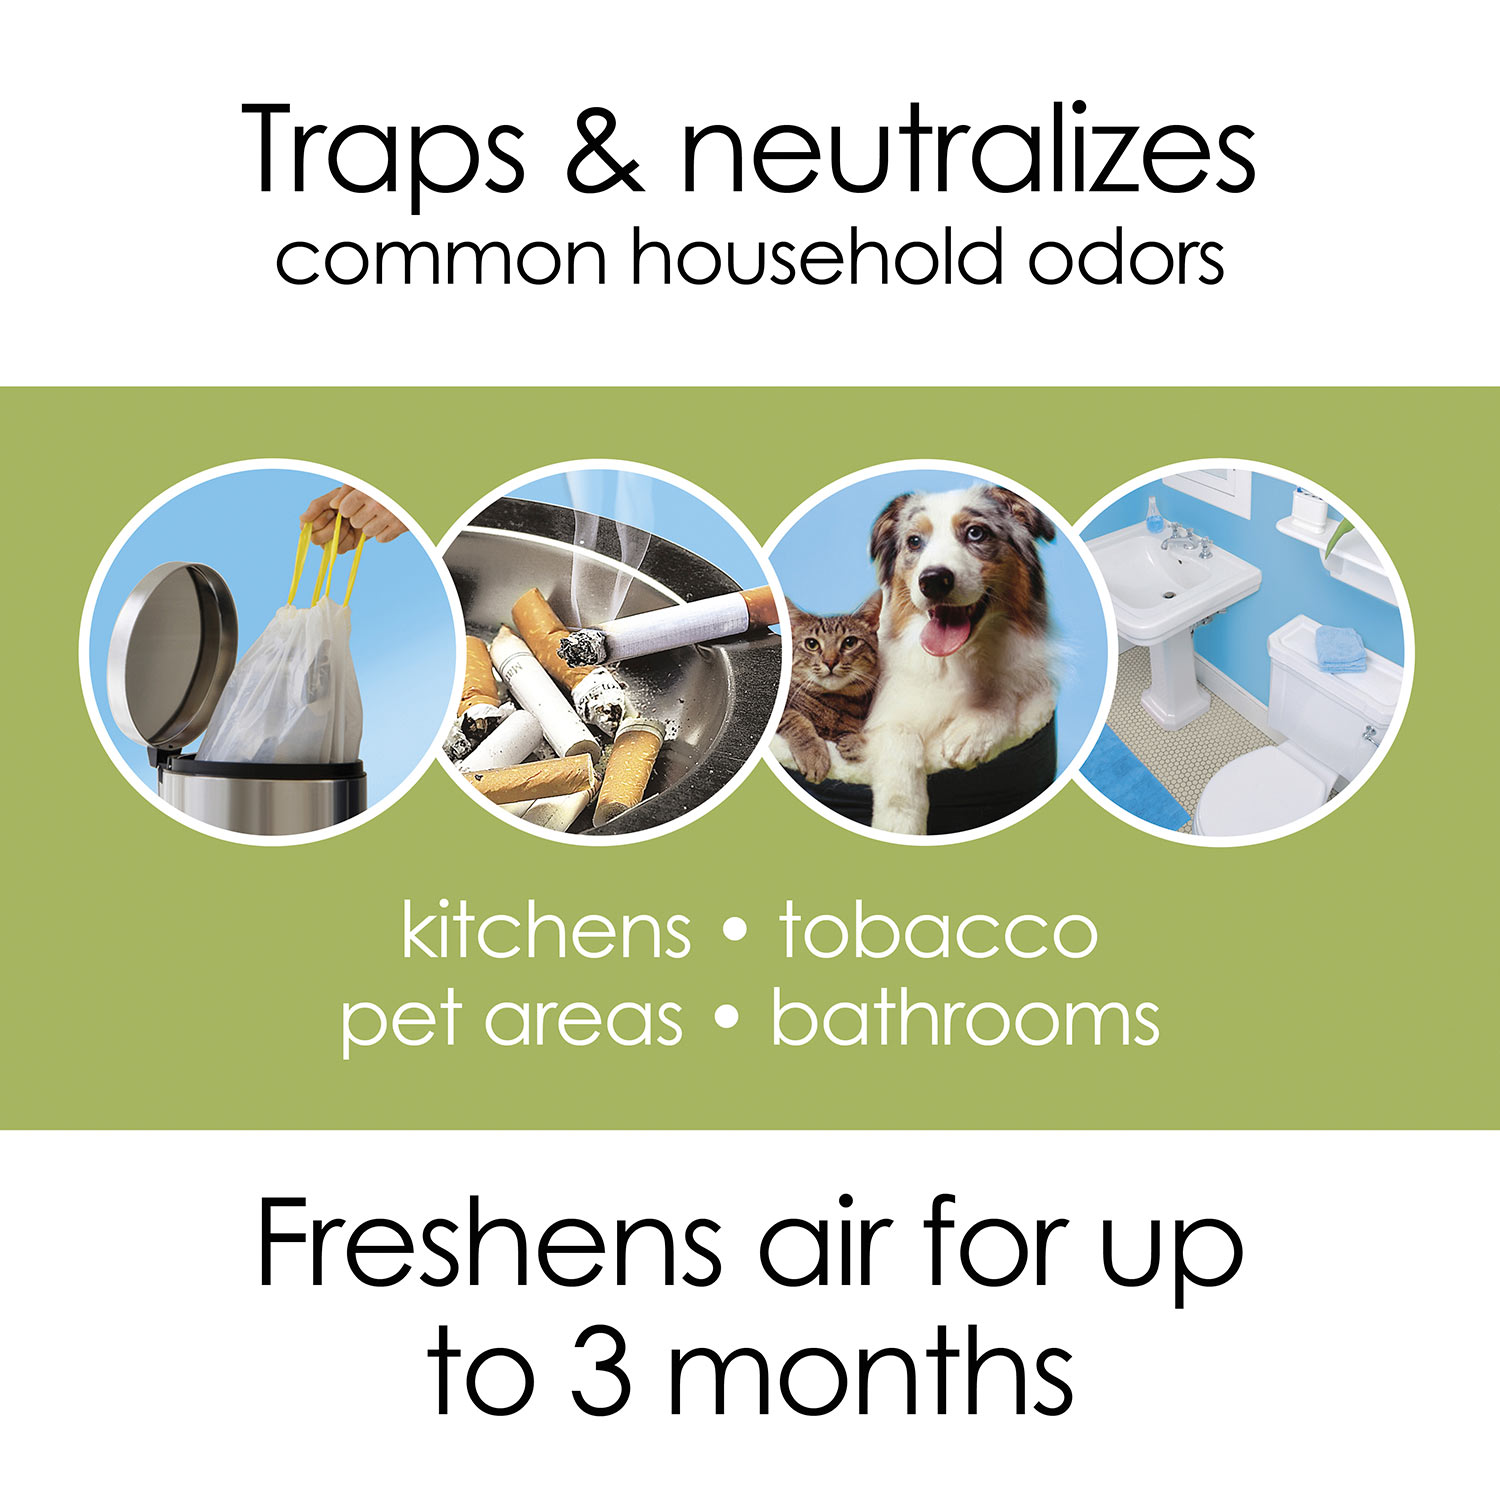 Hamilton Beach TrueAir Air Purifier Pet Odor Eliminator 